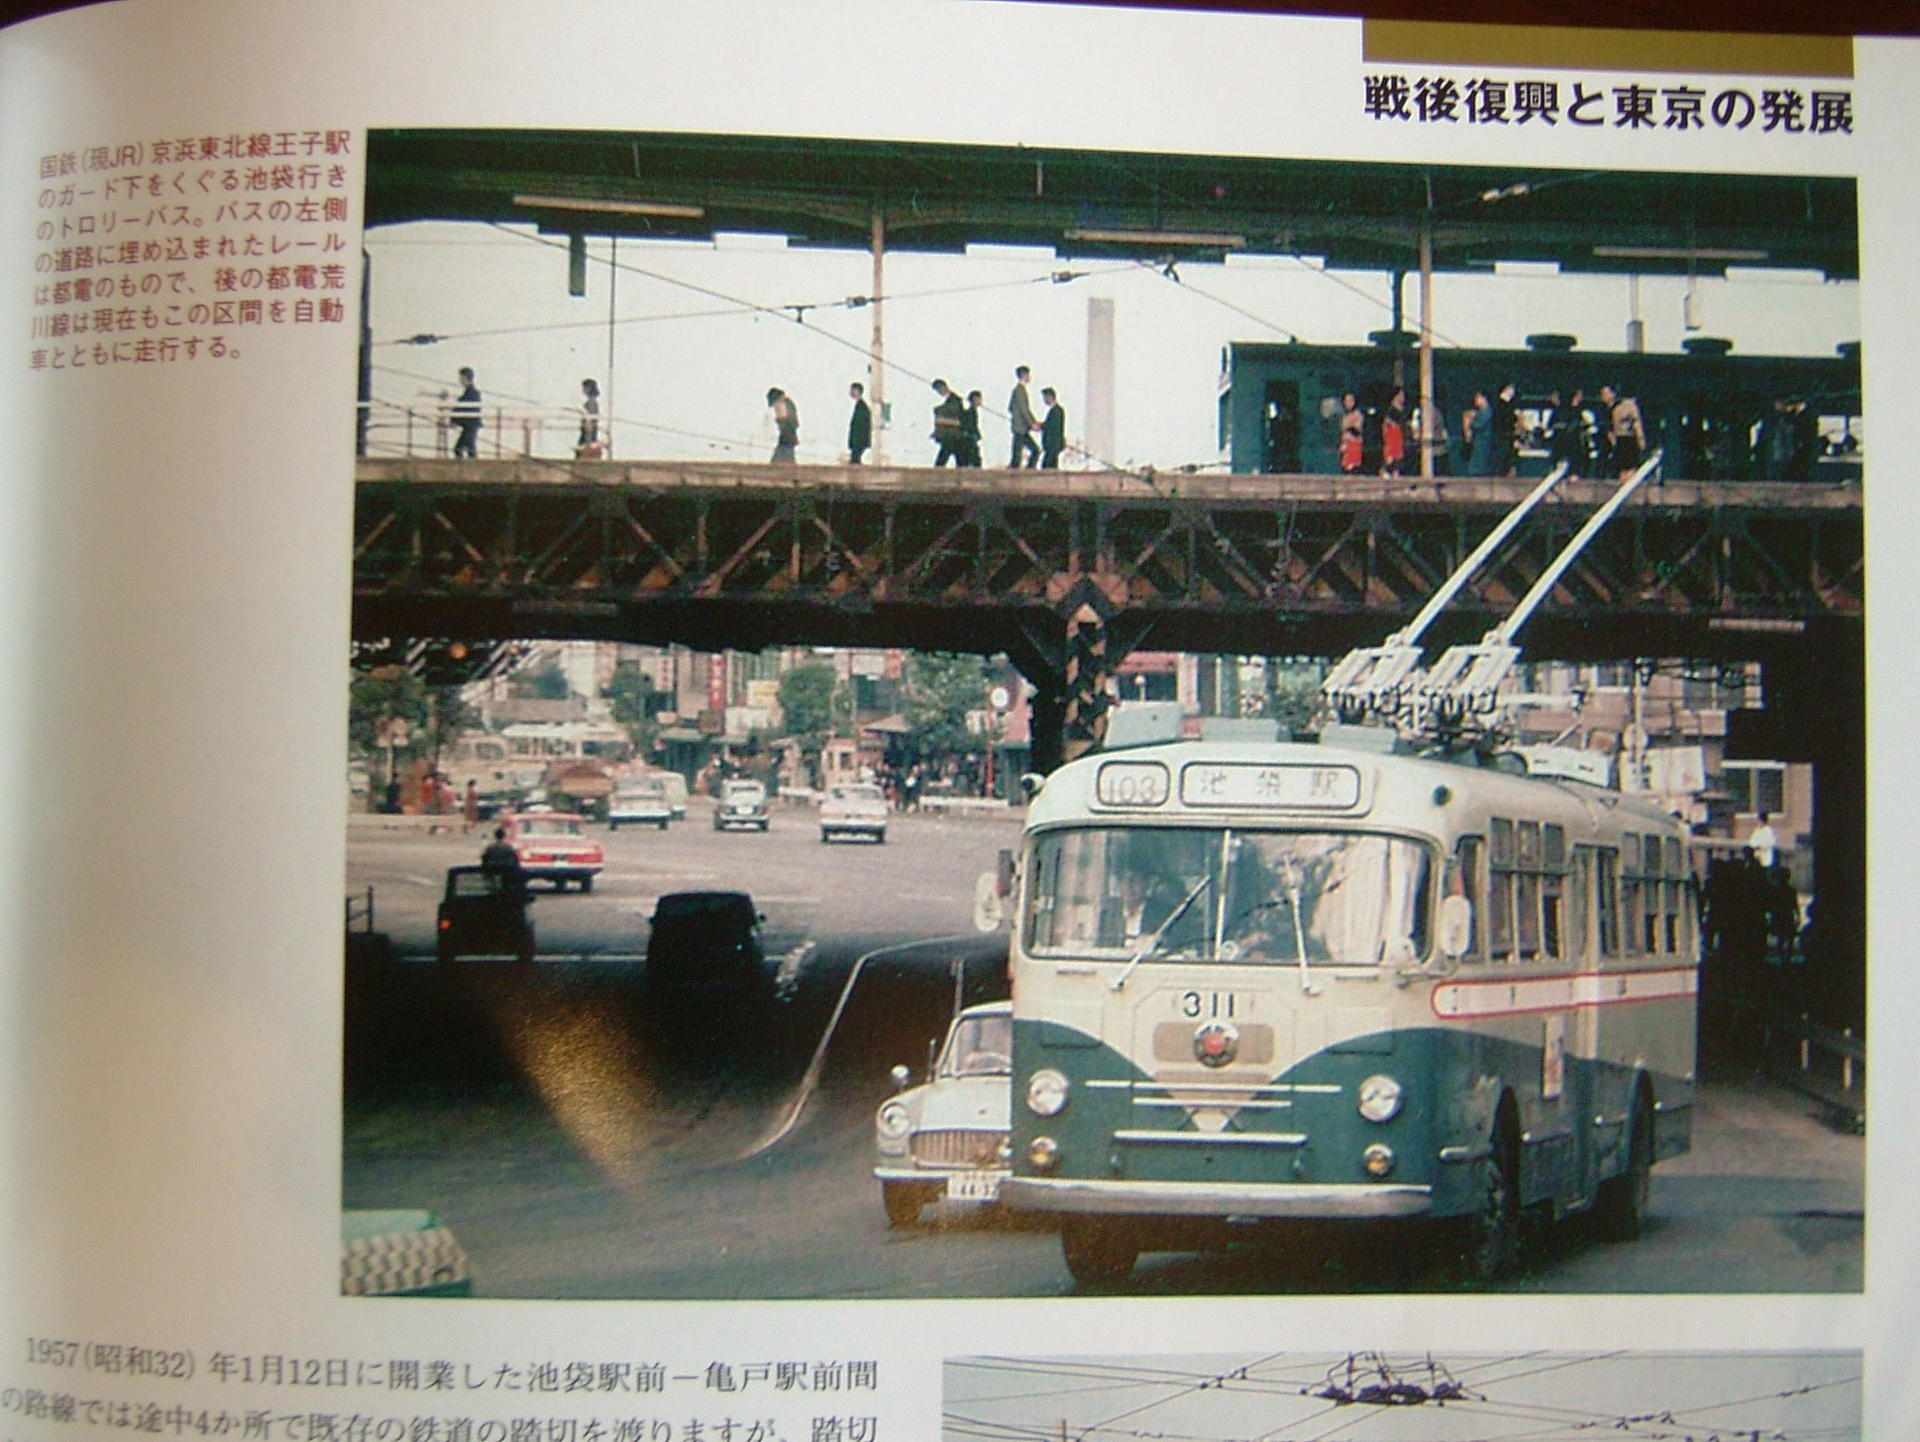 都営交通の隠れた存在―トロリーバス: Mr.Tetsuoの鉄道と芸能界系の話題